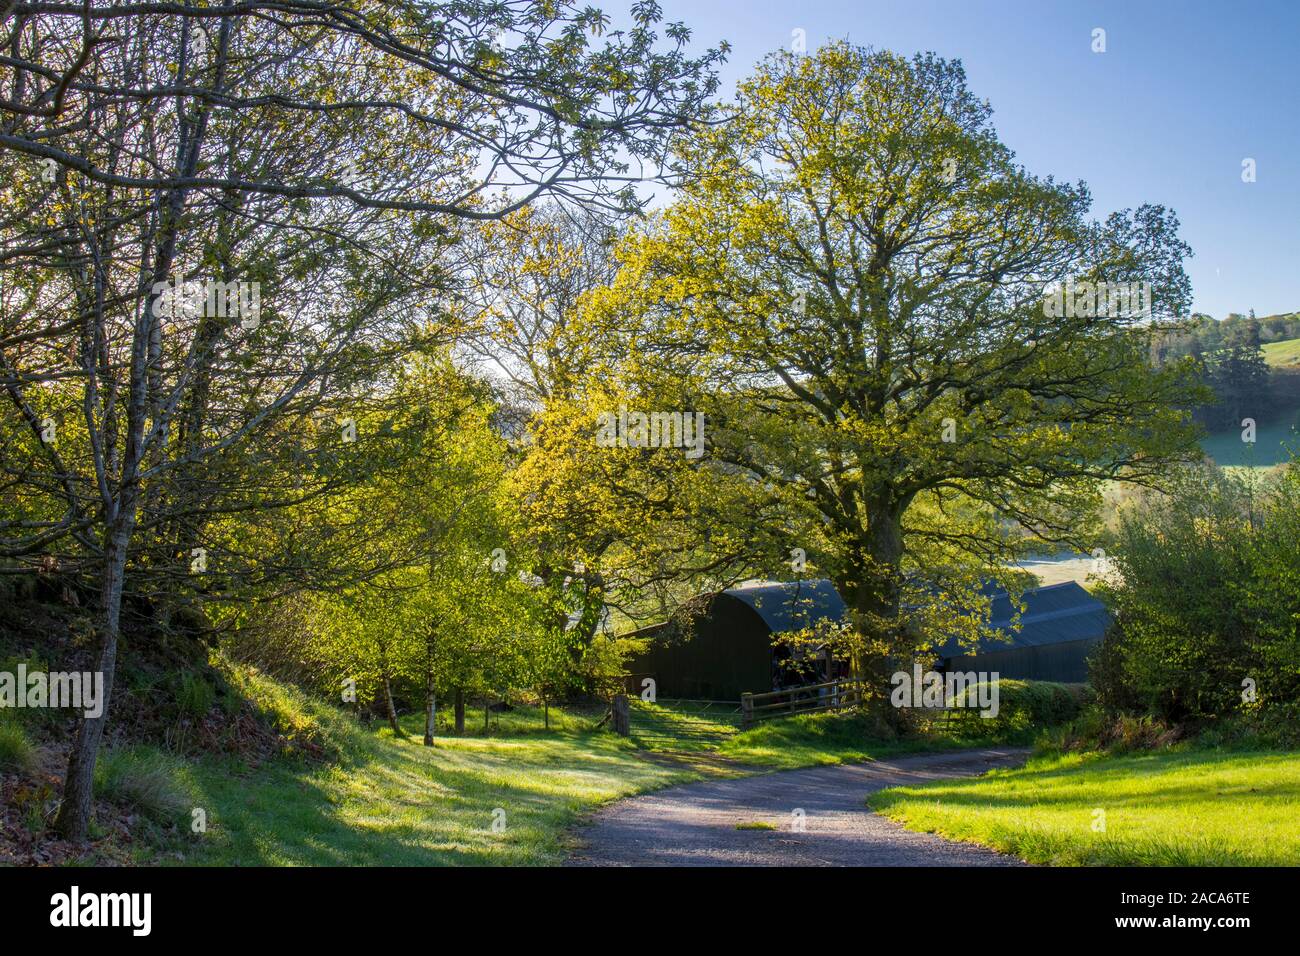 Ver granja de graneros y un roble albar (Quercus petraea) árbol en primavera. Powys, Gales. De mayo. Foto de stock